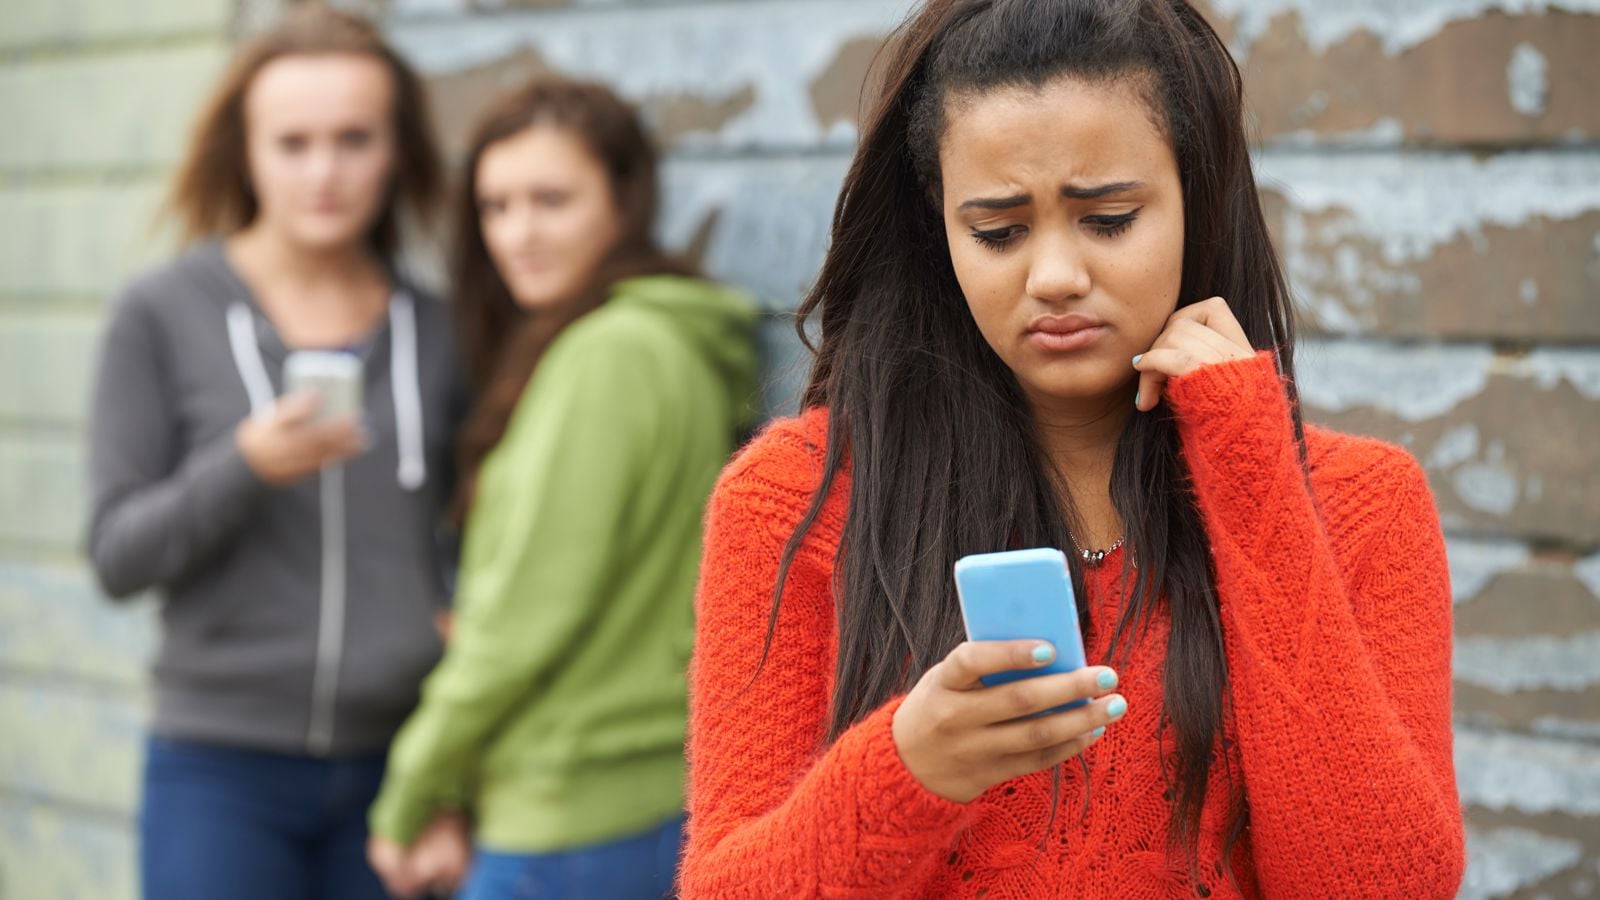 sad teen looking at smartphone